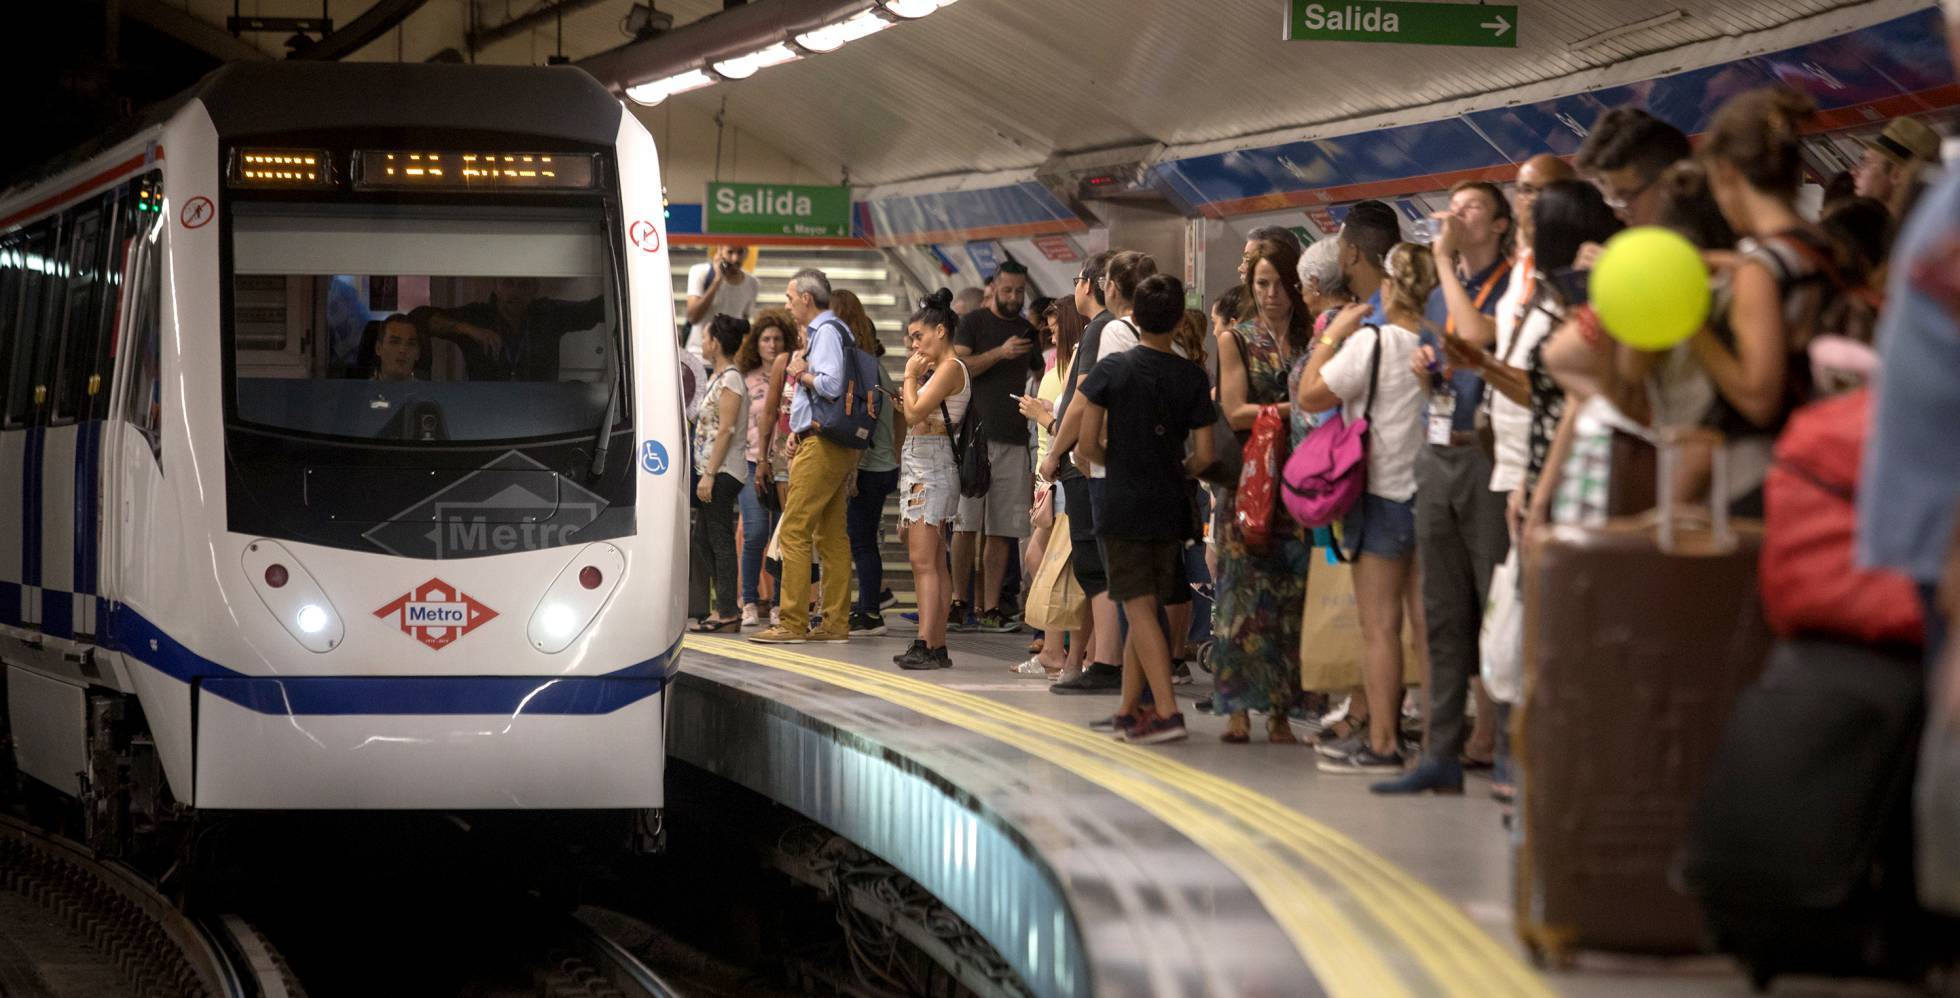 Los 60 trenes de metro prometidos varias veces desde octubre no llegarán al menos hasta final de 2022